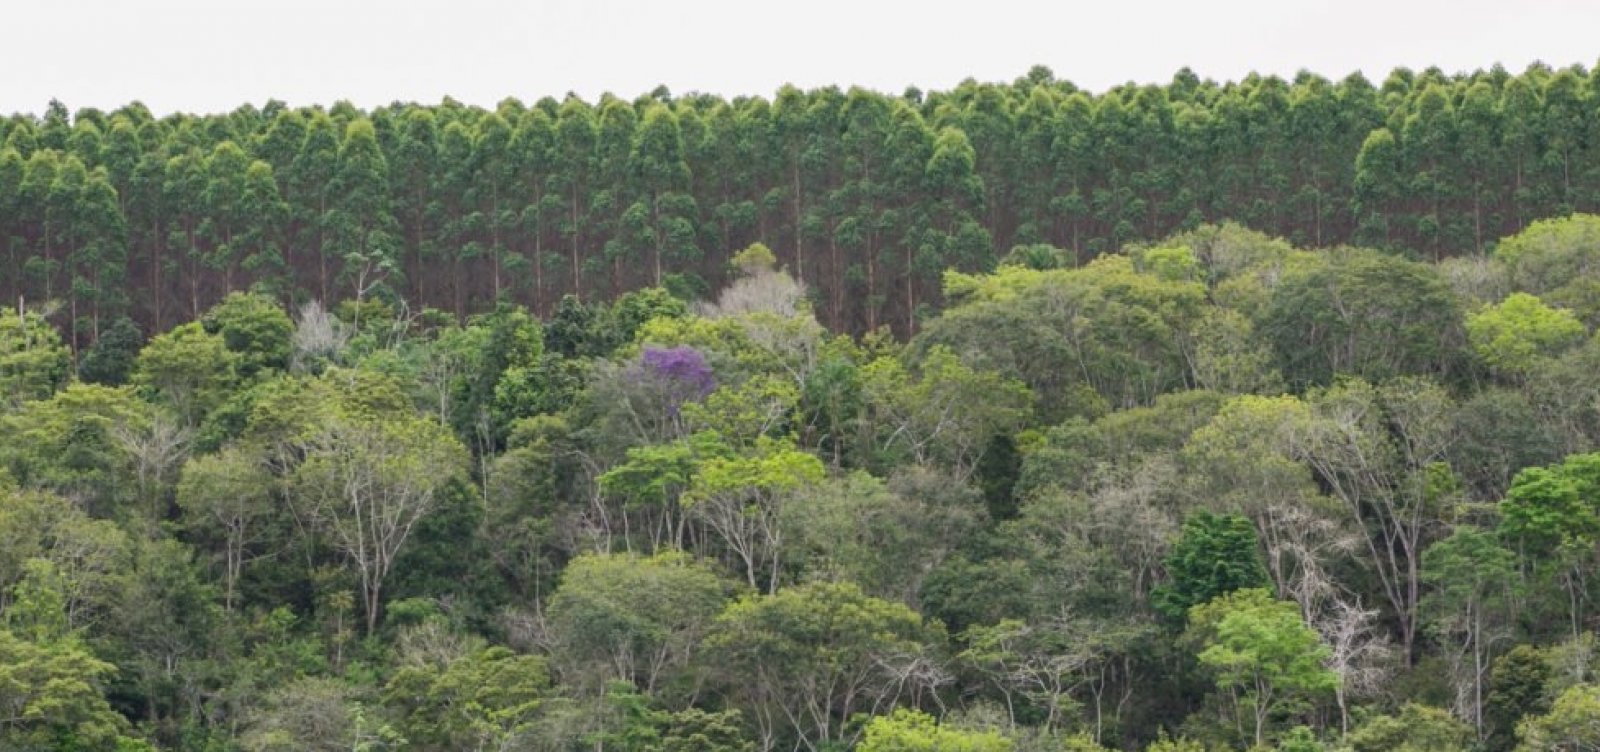 Bahia registra aumento de 1,9% na produção florestal